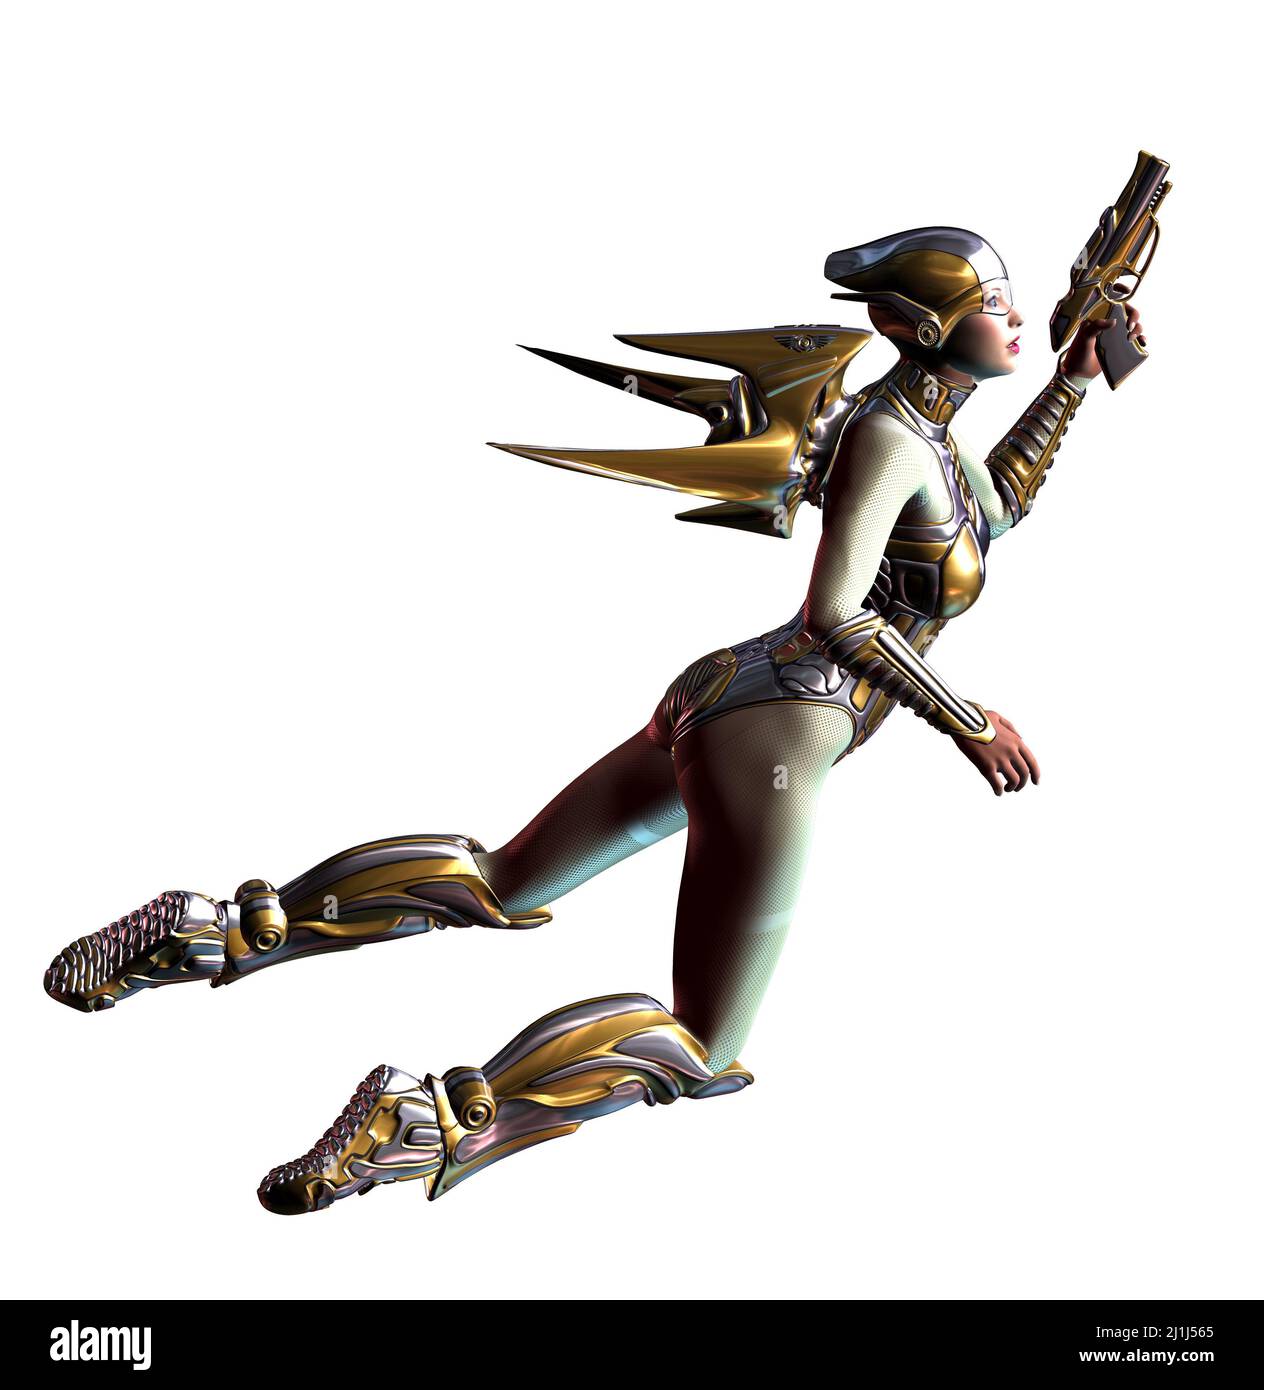 donna futuristica in salto, volare con un jetpack, armato di pistole, 3d illustrazione Foto Stock